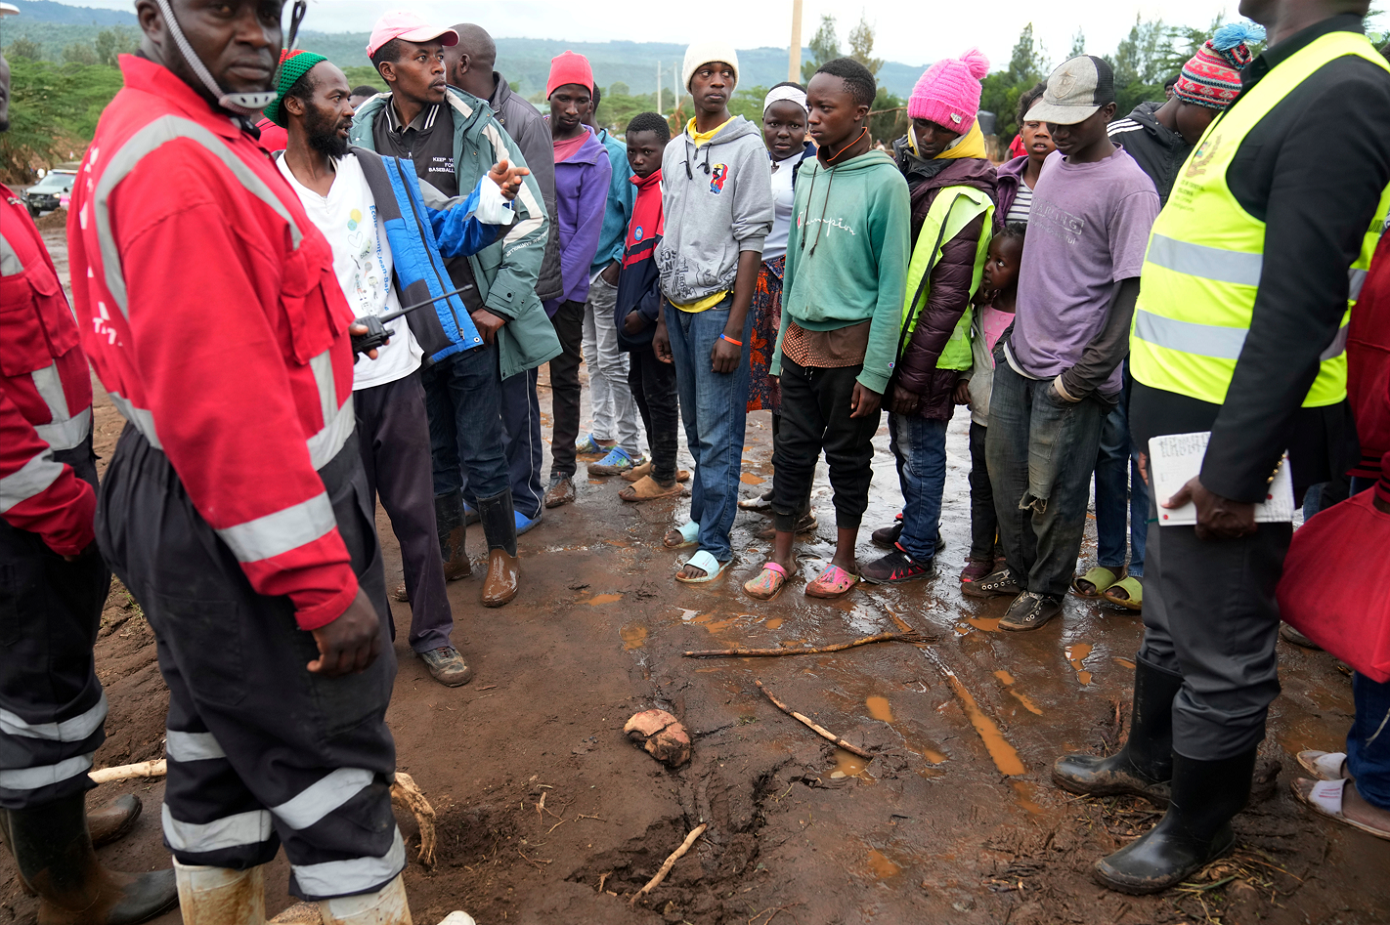 Φρικιαστική ανακάλυψη σε χωριό της Ουγκάντας: Δεκαεπτά κρανία βρέθηκαν θαμμένα σε «χώρο λατρείας»